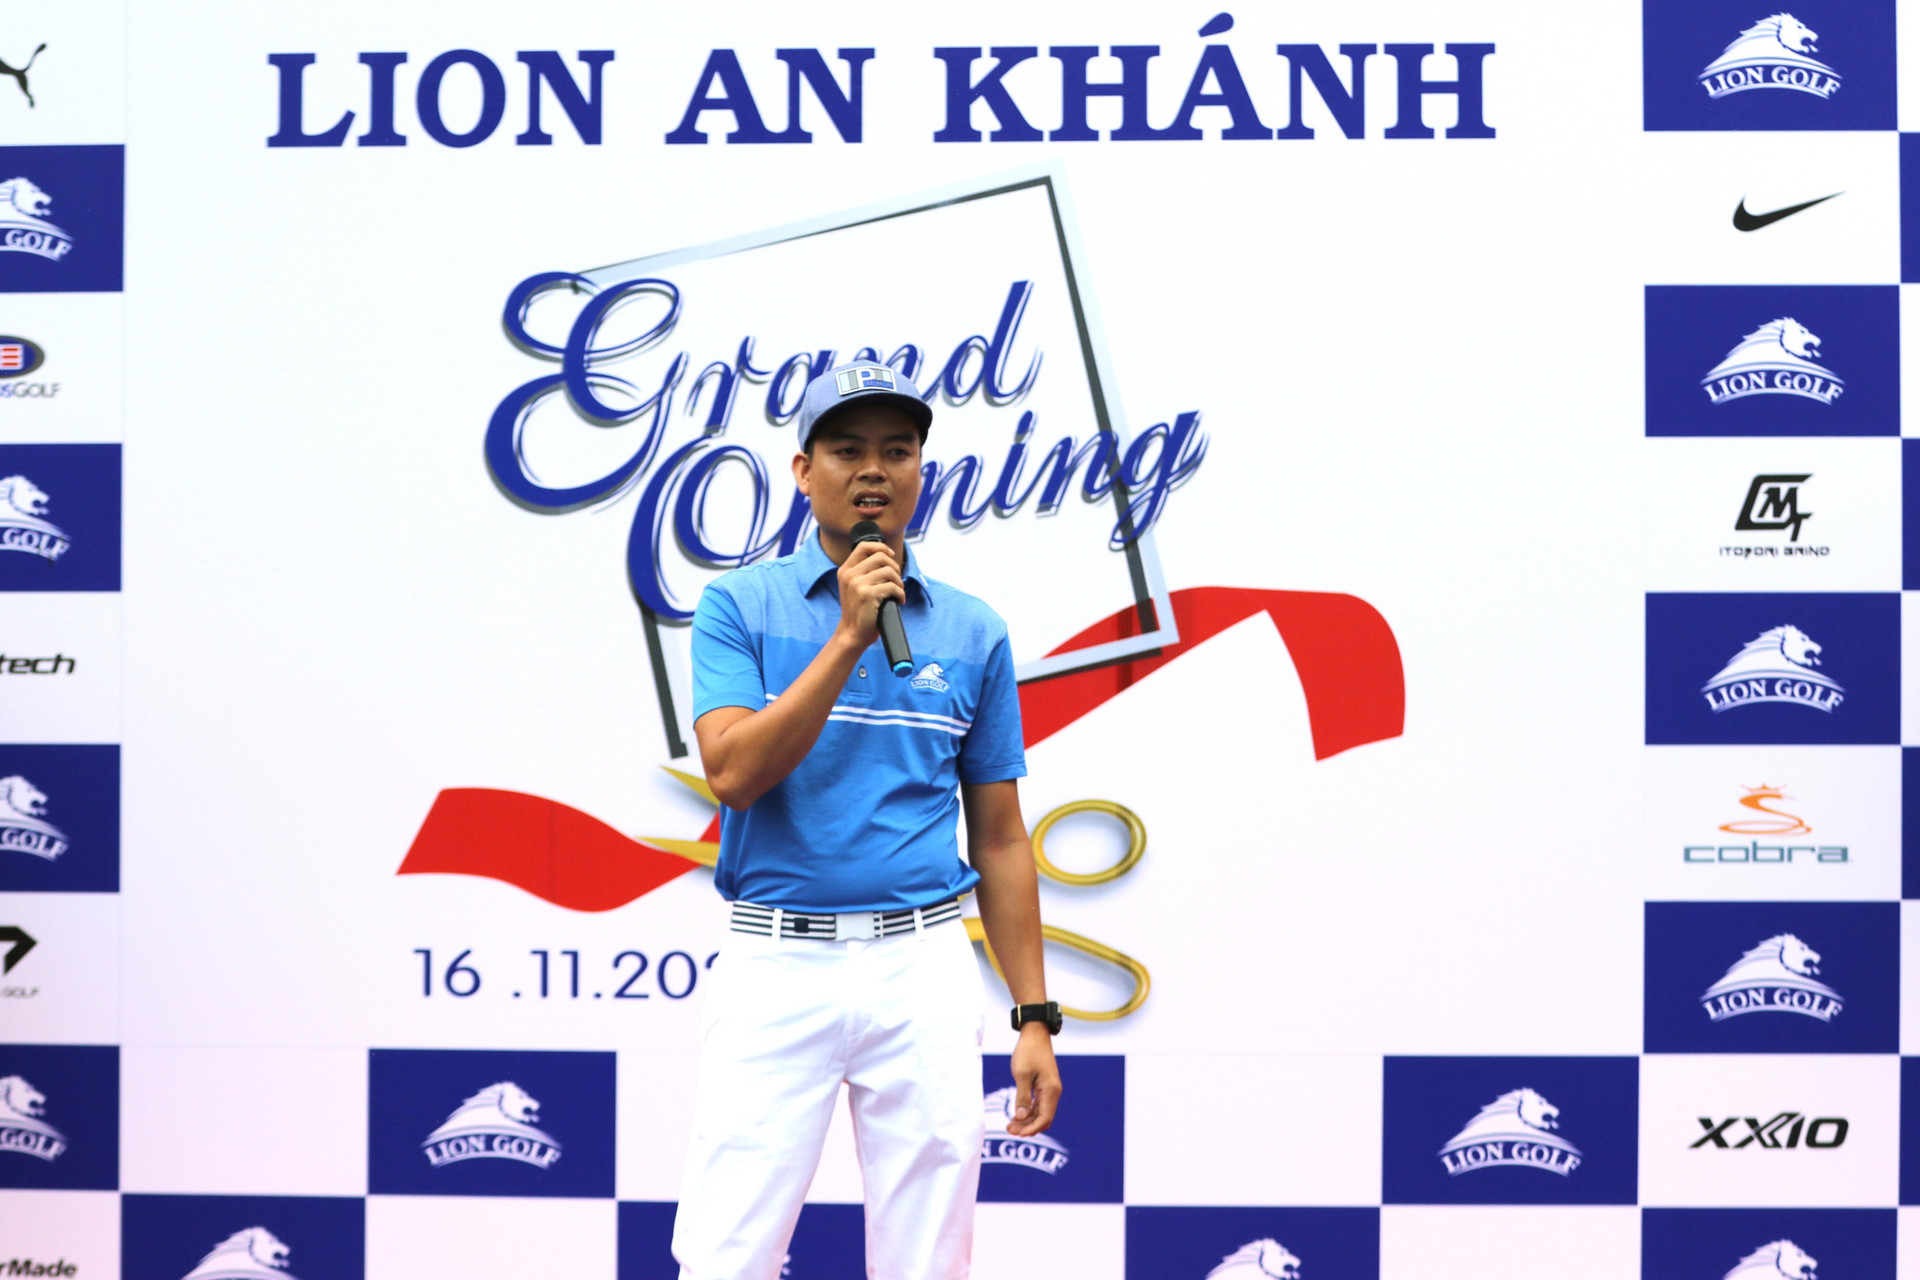 Lion Golf tưng bừng khai trương showroom thứ 3 tại TP Hồ Chí Minh - Ảnh 3.